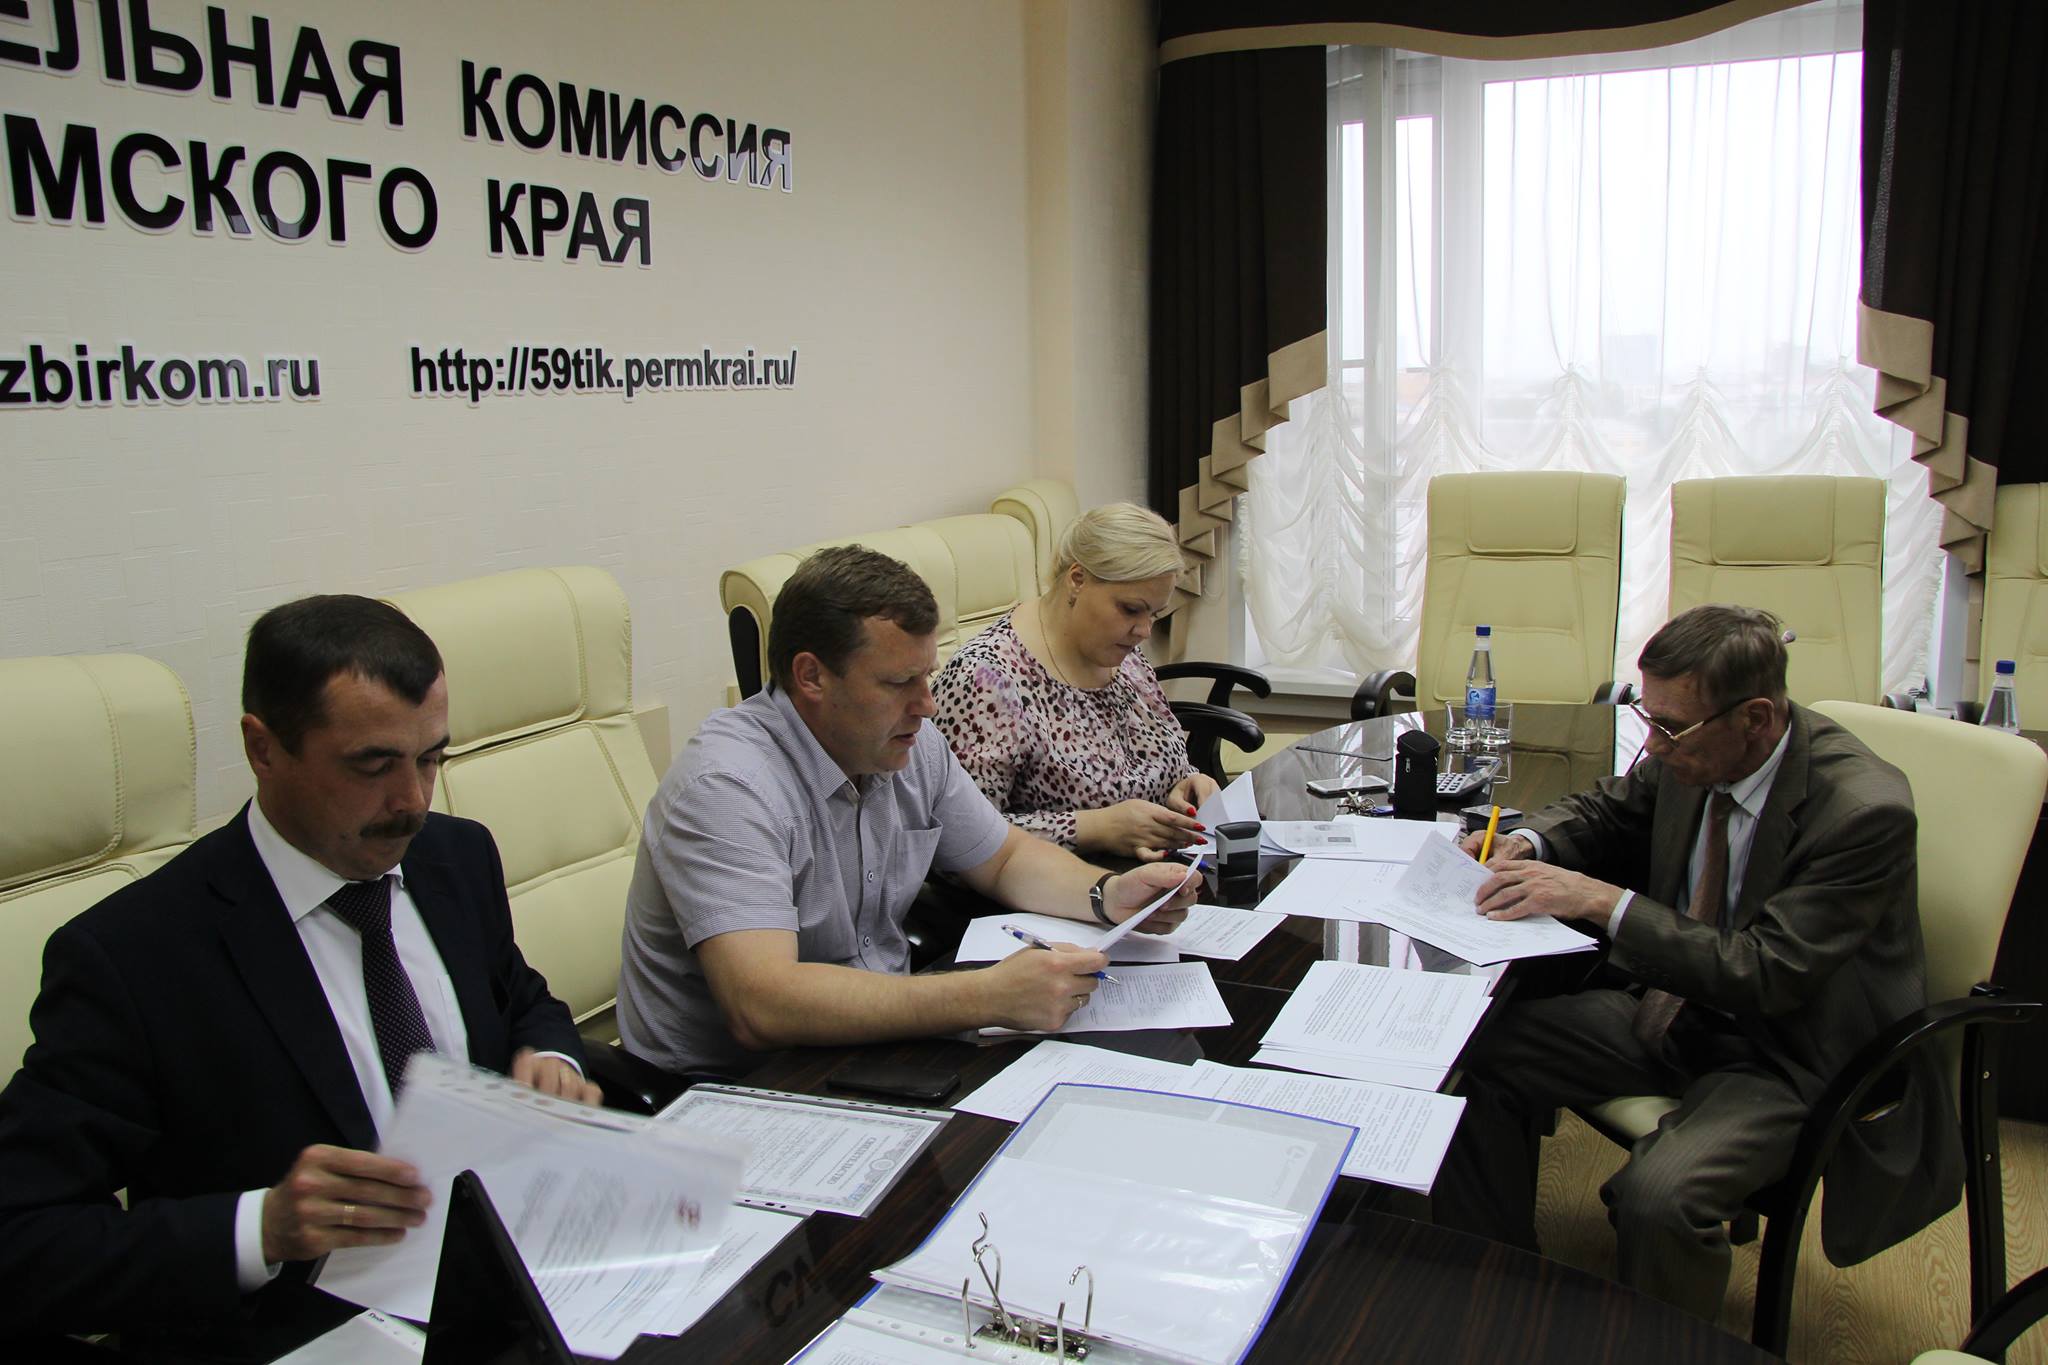 Олег Хараськин и Владимир Аликин подали документы о выдвижении на выборы губернатора